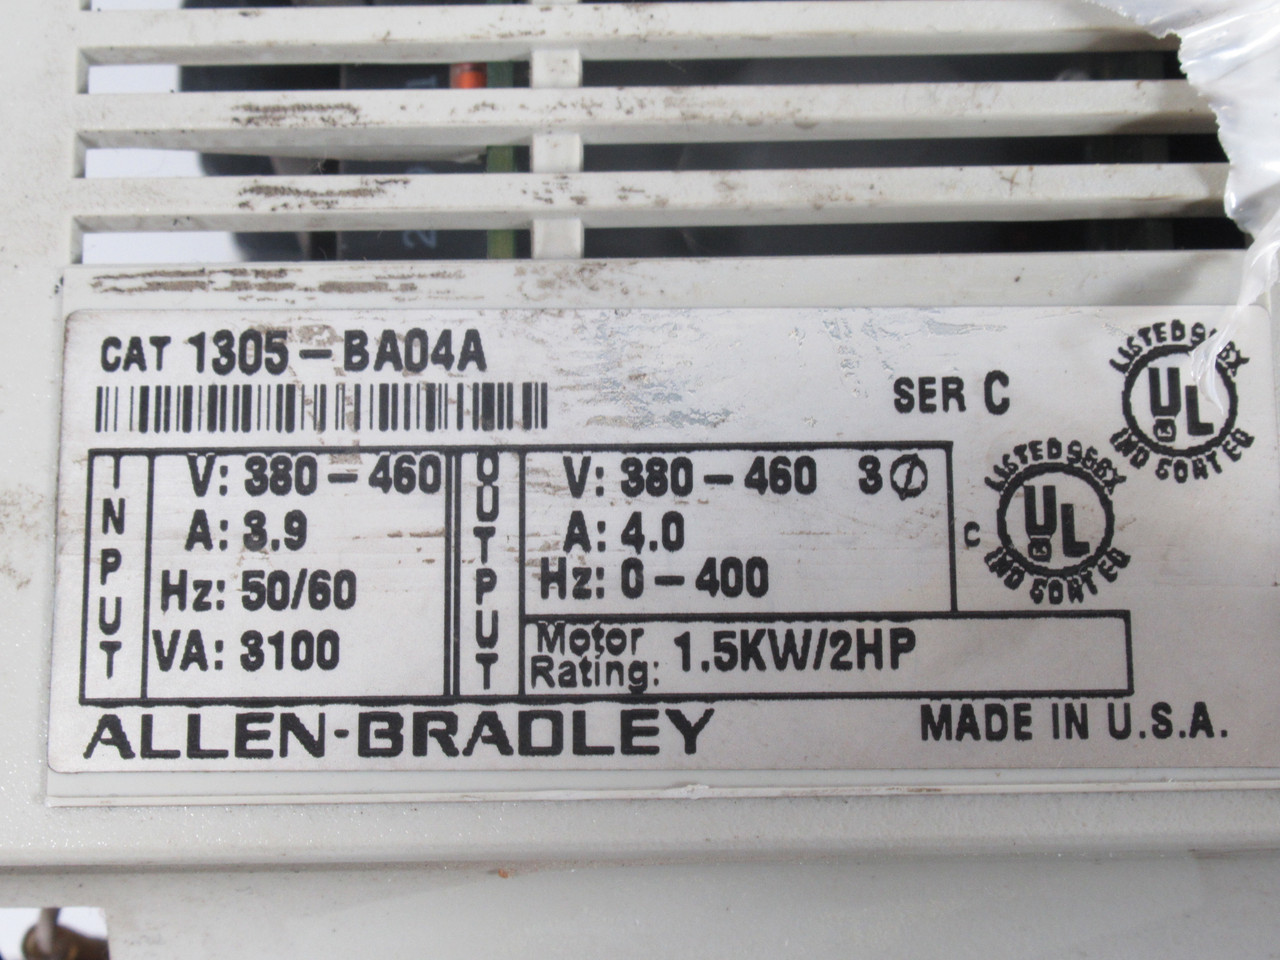 Allen-Bradley 1305-BA04A AC Drive 2HP 3ph 380-460V 4A 0-400Hz ! AS IS !